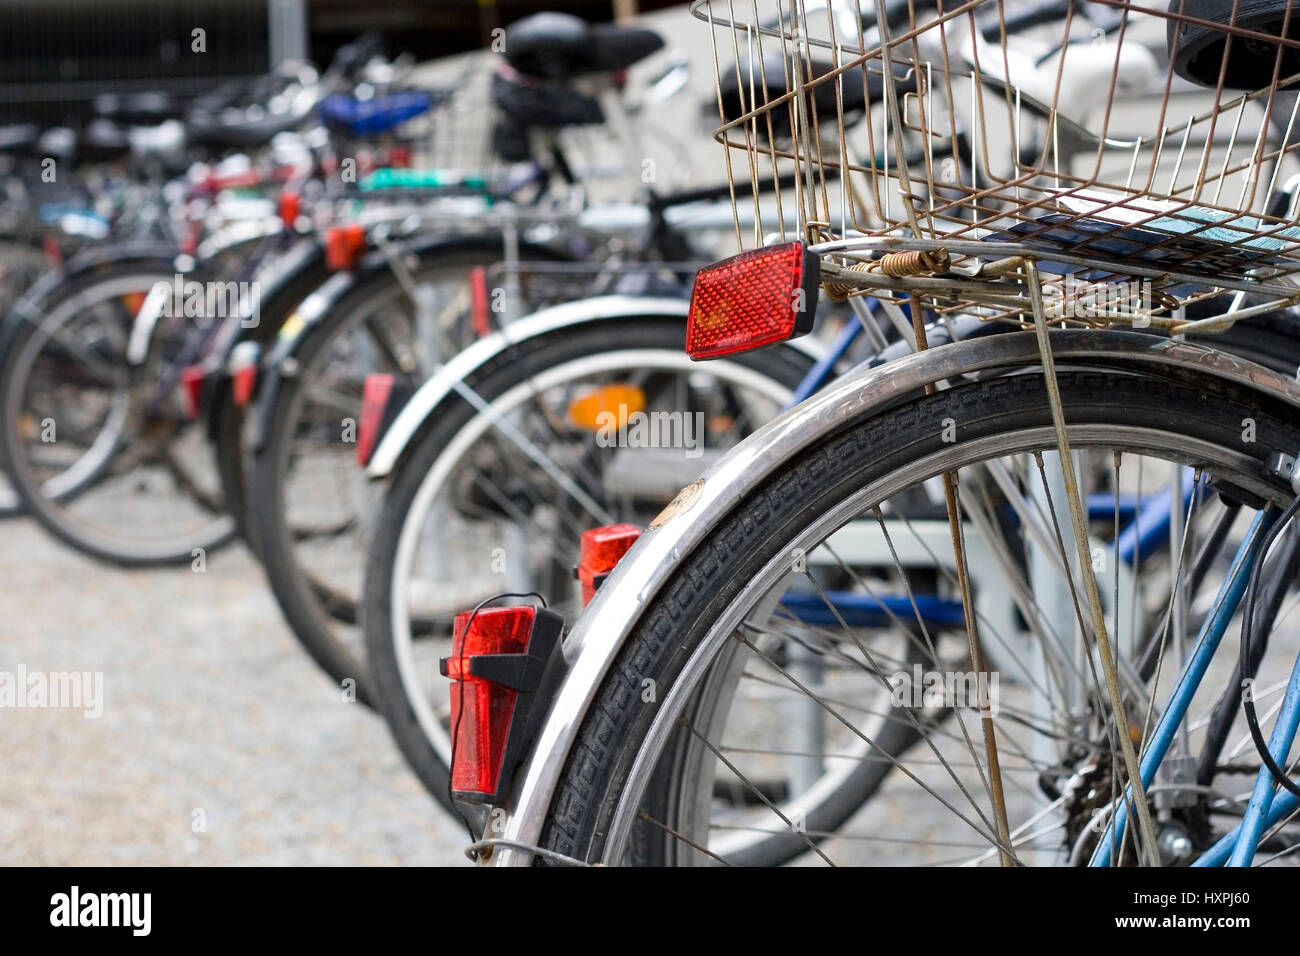 Mettere giù le biciclette, abgestellte Fahrräder Foto Stock